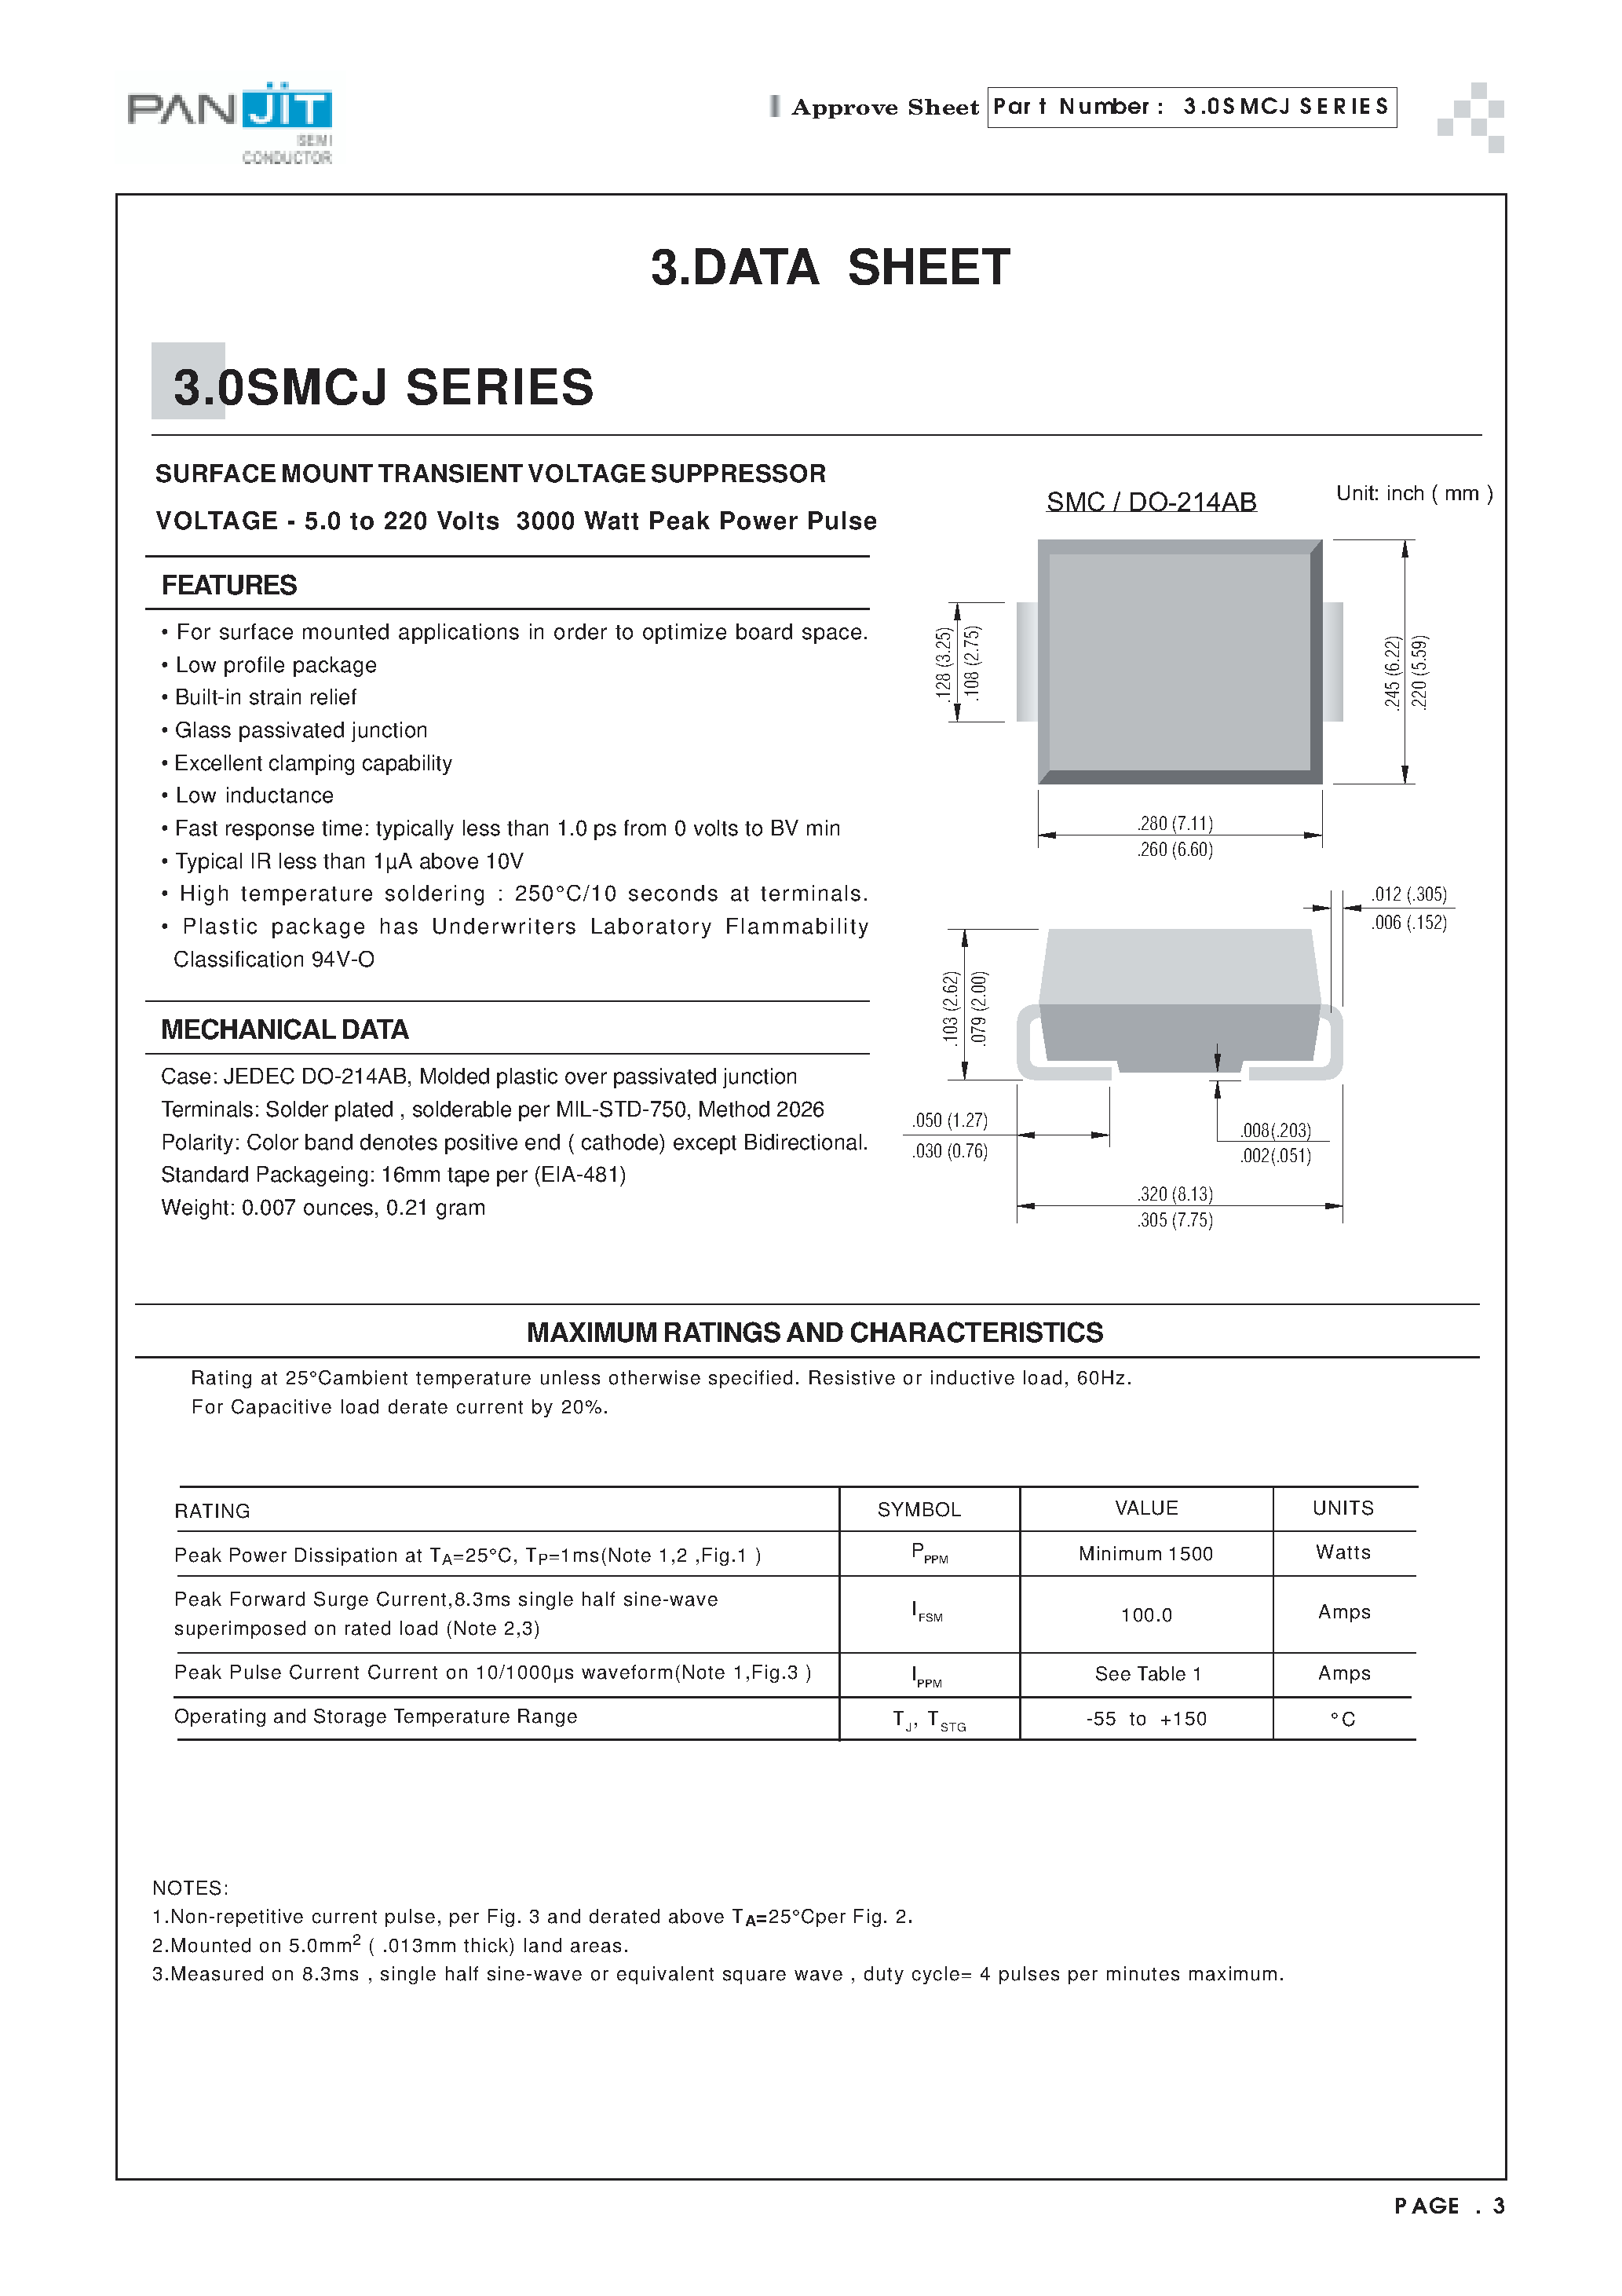 Datasheet 3.0SMCJ7.5 - SURFACE MOUNT TRANSIENT VOLTAGE SUPPRESSOR(VOLTAGE - 5.0 to 220 Volts 3000 Watt Peak Power Pulse) page 1